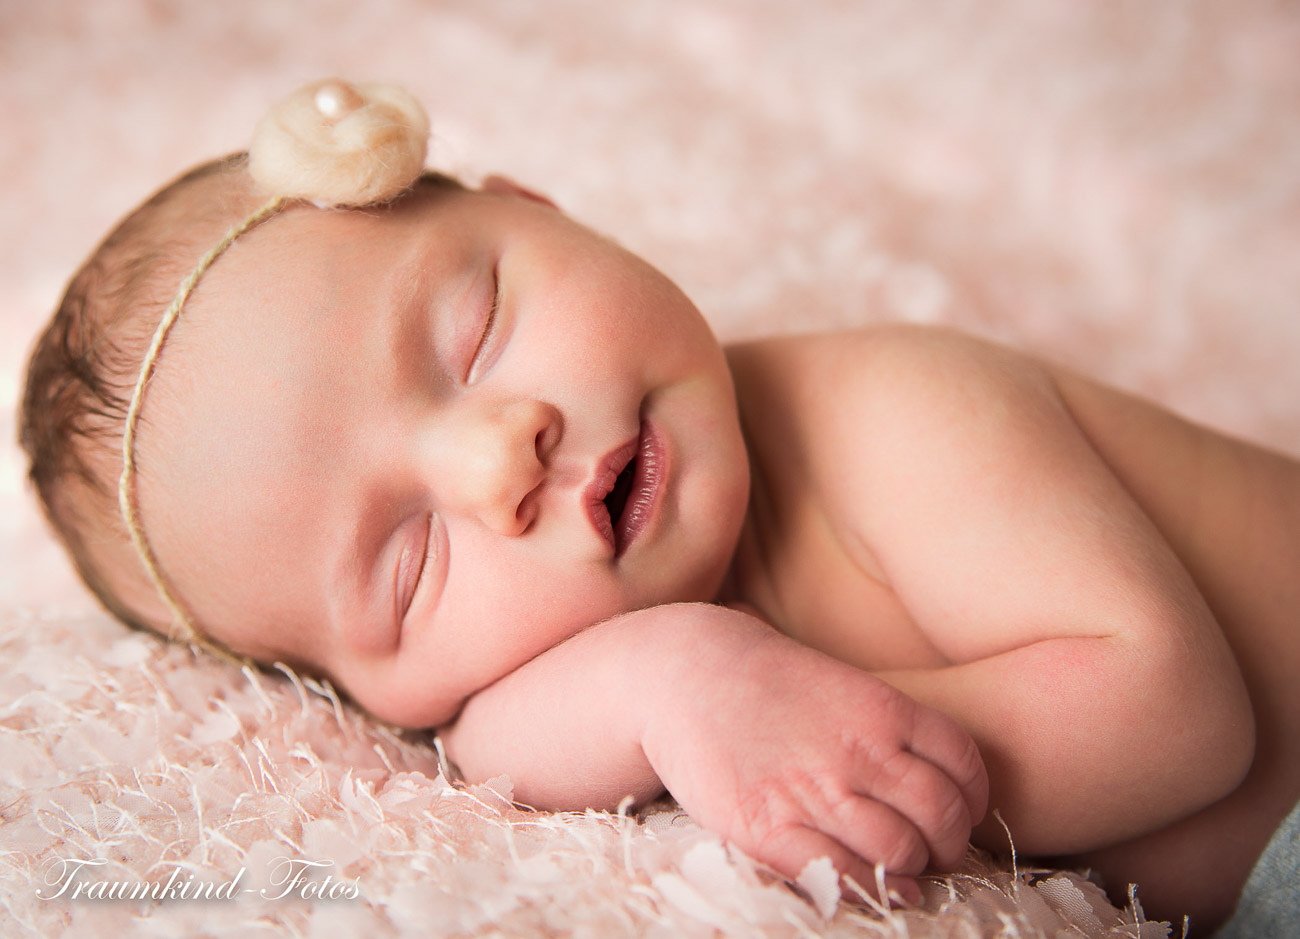 Traumkind Fotos Neugeborenen Fotos Essen 5 - Babyfotos